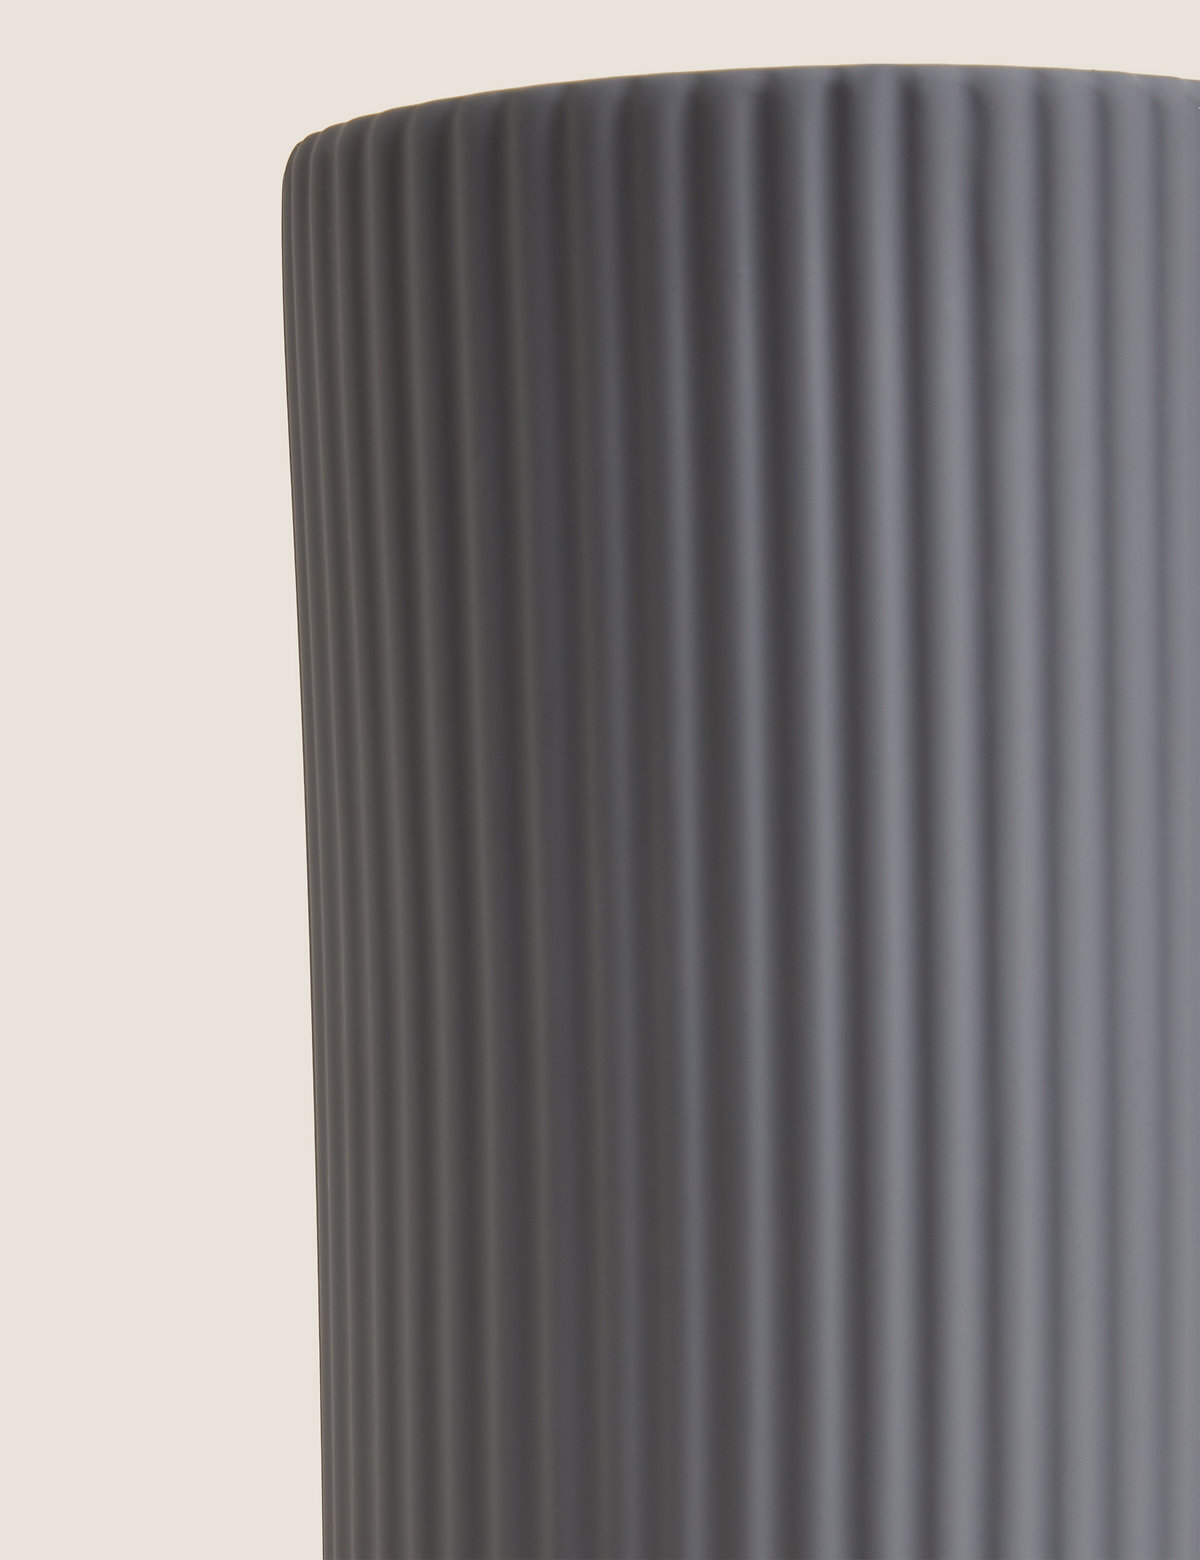 Ceramic Ridged Vase